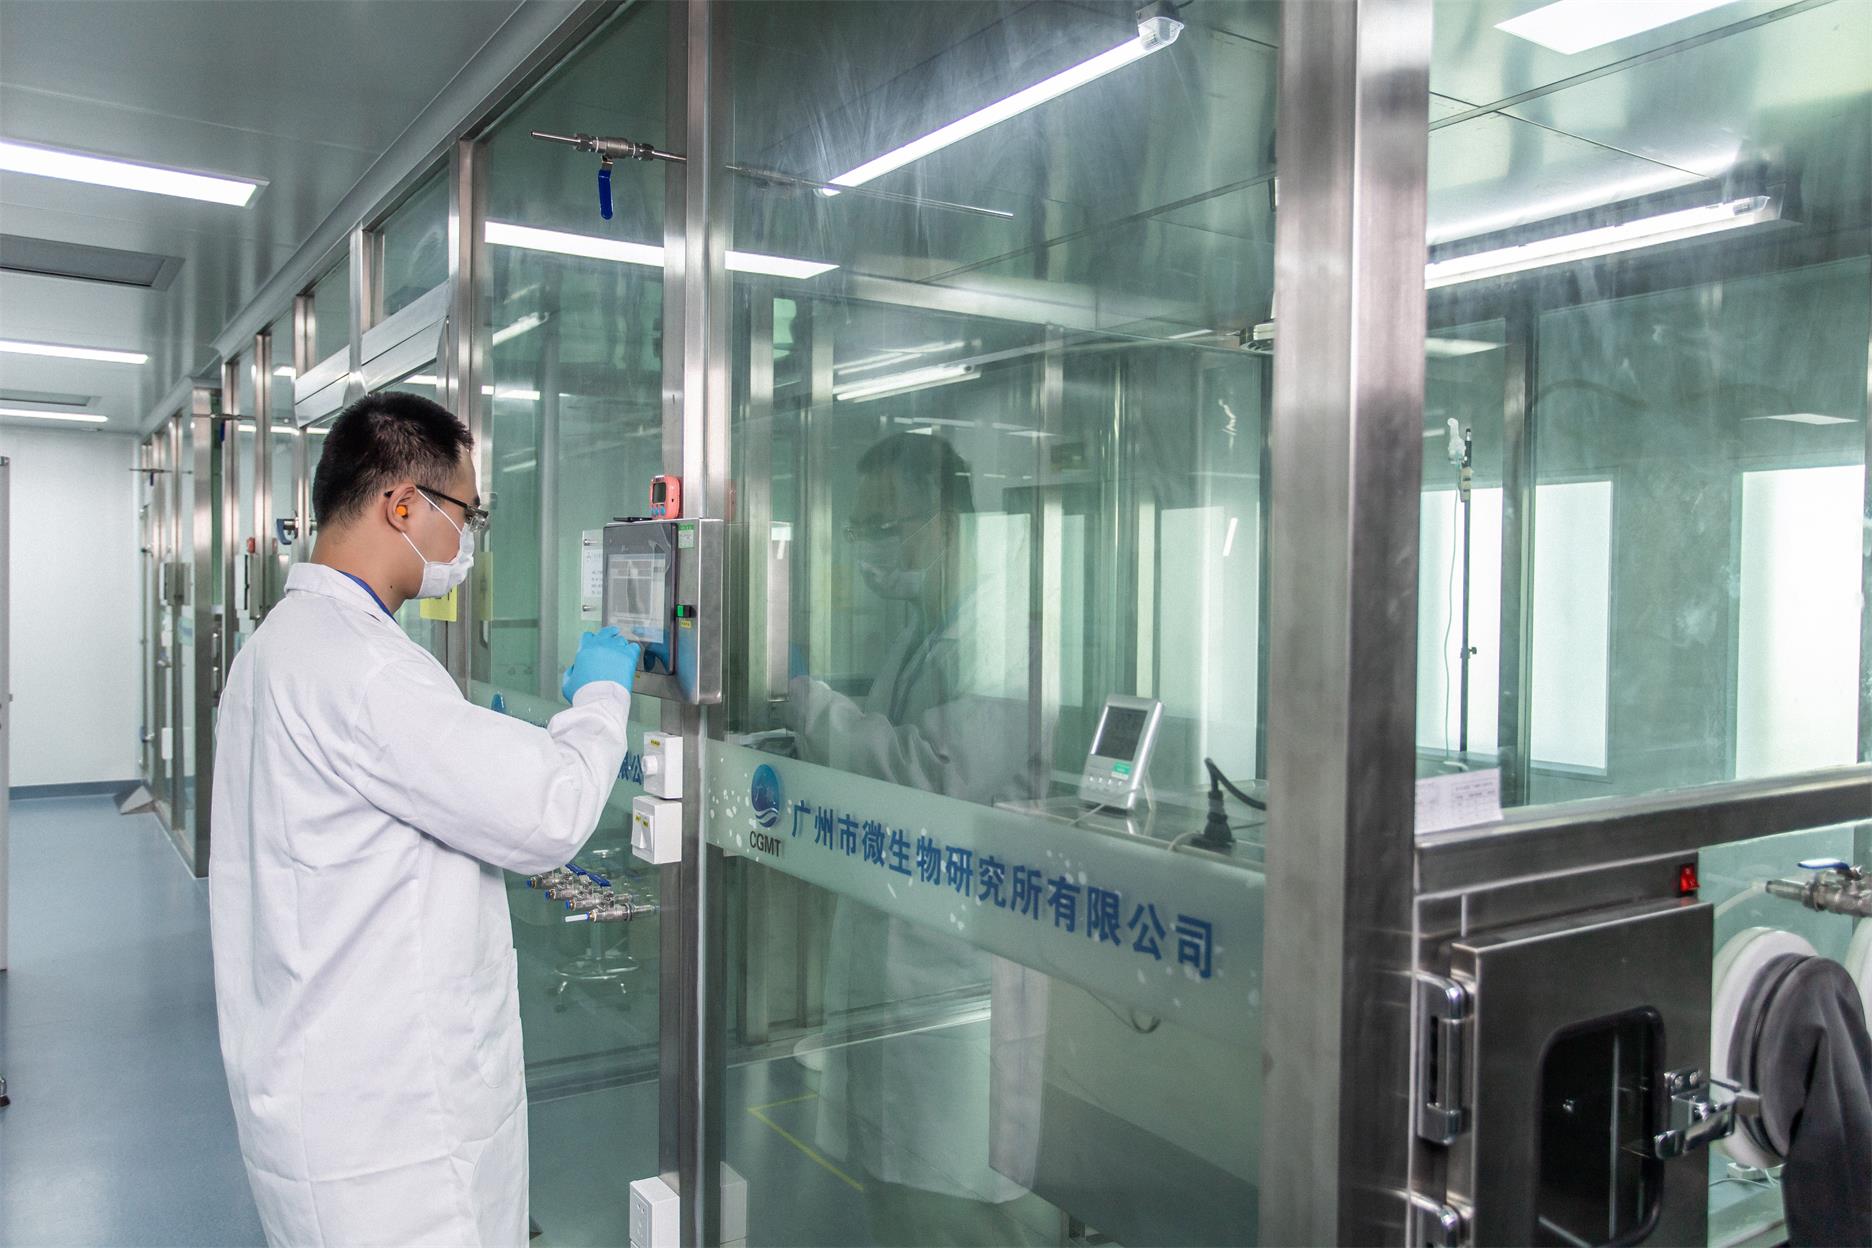 空气洁净度检测 广东洁净空气量检测公司 广州市微生物研究所有限公司